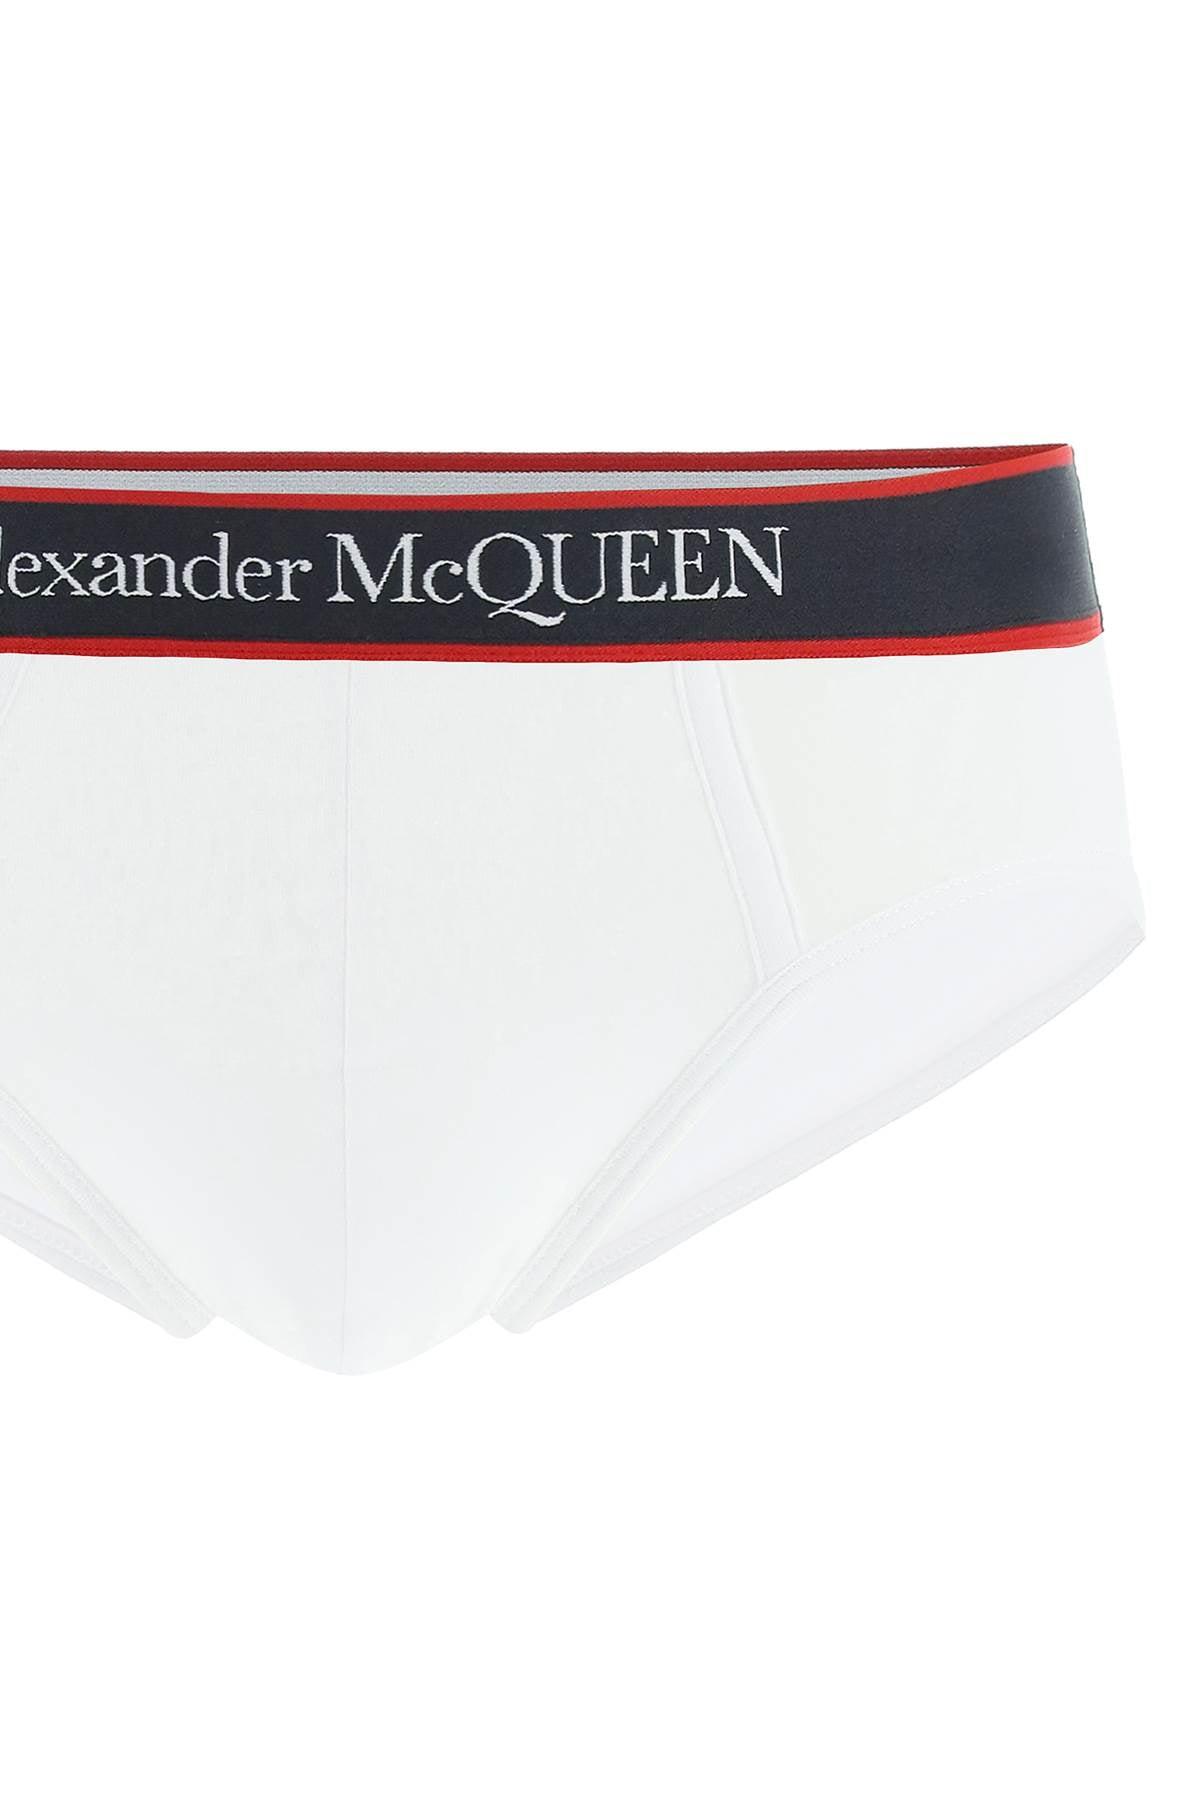 Black Mens Clothing Underwear Boxers briefs for Men Alexander McQueen Cotton Briefs in White/Red 